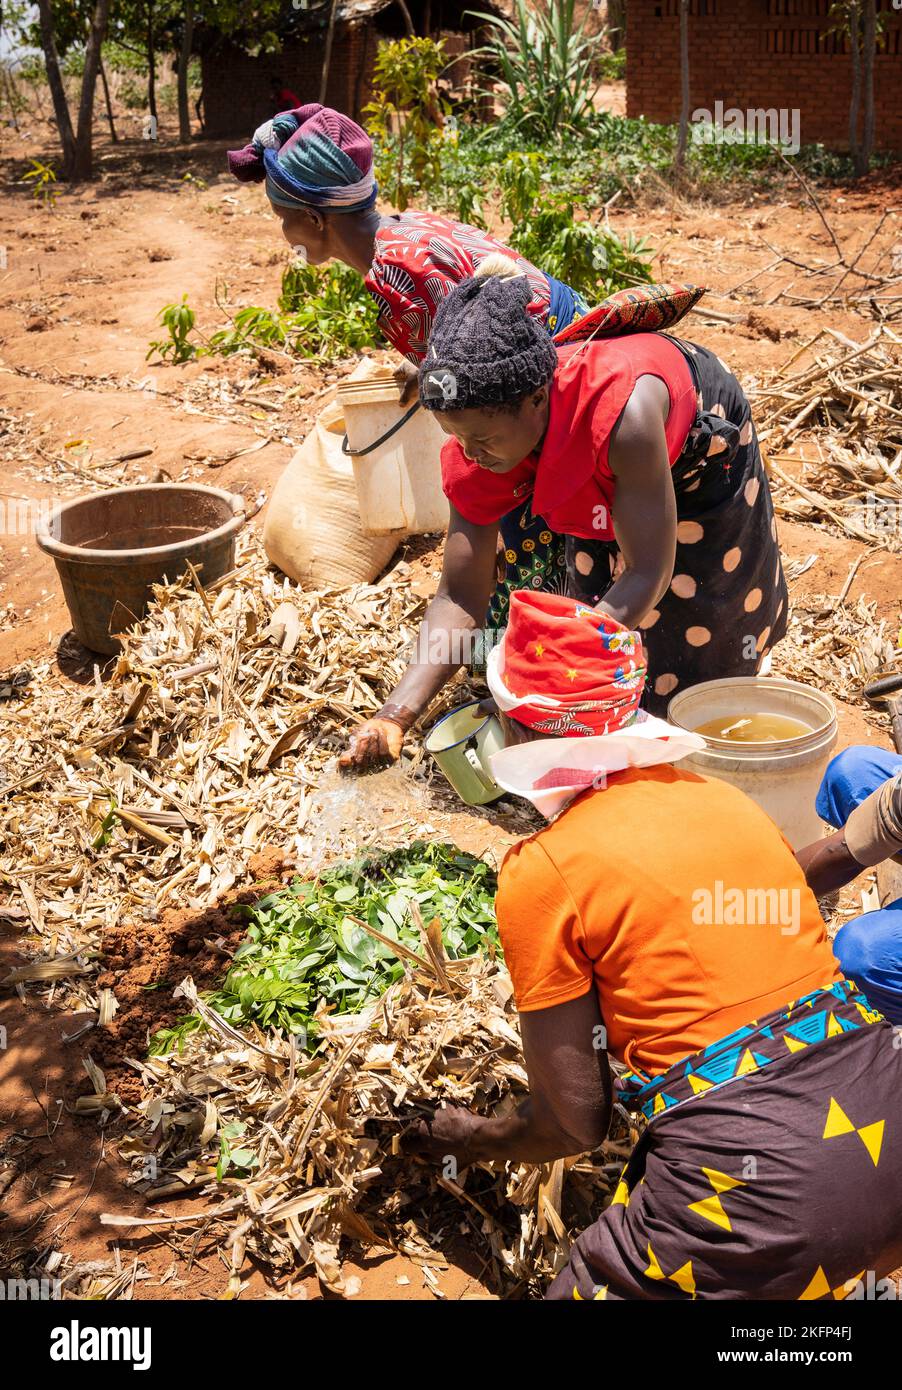 Les agricultrices qui font du fumier de bokashi dans le cadre d'un programme de conservation agricole dans les zones rurales du Malawi Banque D'Images